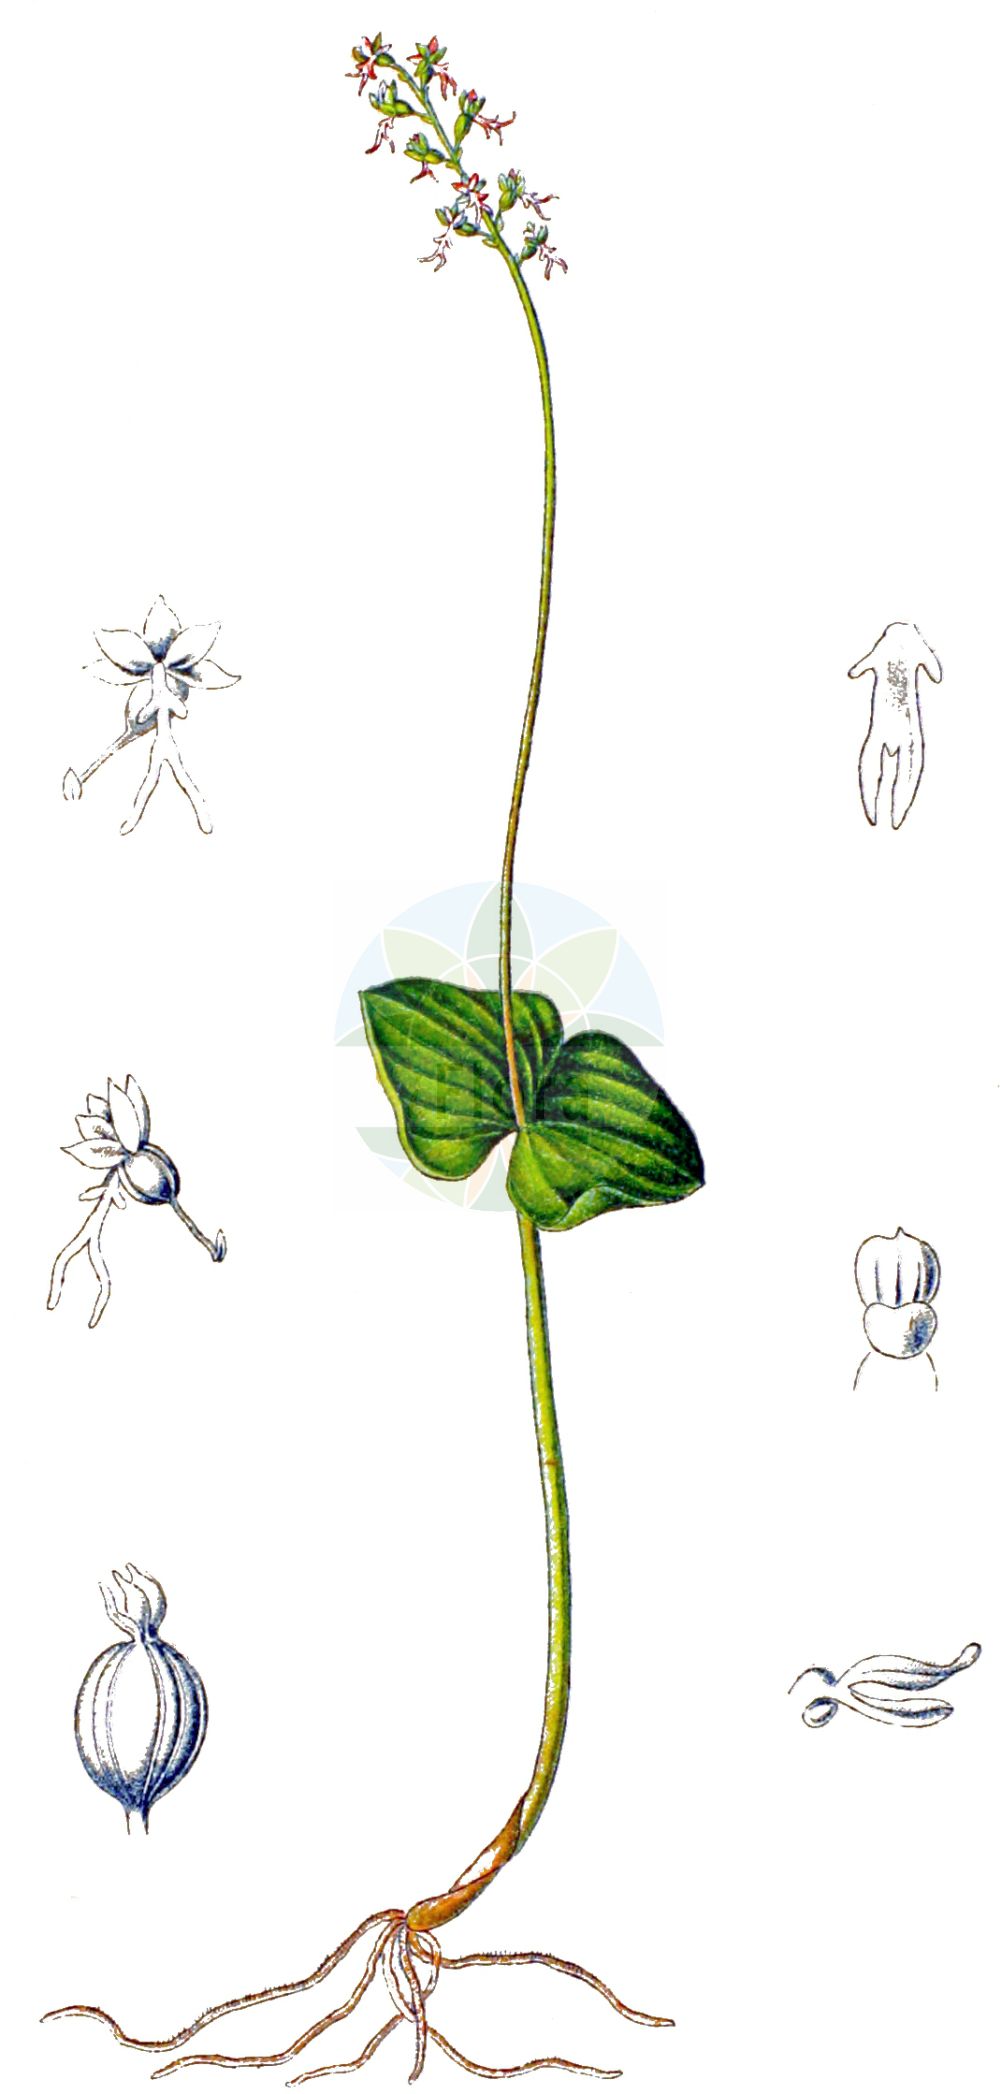 Historische Abbildung von Neottia cordata (Kleines Zweiblatt - Lesser Twayblade). Das Bild zeigt Blatt, Bluete, Frucht und Same. ---- Historical Drawing of Neottia cordata (Kleines Zweiblatt - Lesser Twayblade). The image is showing leaf, flower, fruit and seed.(Neottia cordata,Kleines Zweiblatt,Lesser Twayblade,Cymbidium cordatum,Diphryllum cordatum,Distomaea cordata,Epipactis cordata,Helleborine cordata,Listera cordata,Listera nephrophylla,Neottia cordata,Neottia nephrophylla,Ophrys cordata,Ophrys nephrophylla,Pollinirhiza cordata,Serapias cordata,Kleines Zweiblatt,Herz-Zweiblatt,Lesser Twayblade,Heartleaf Twayblade,Neottia,Nestwurz,Nest Orchid,Orchidaceae,Knabenkrautgewächse,Orchid family,Blatt,Bluete,Frucht,Same,leaf,flower,fruit,seed,Schulze (1892-1894))